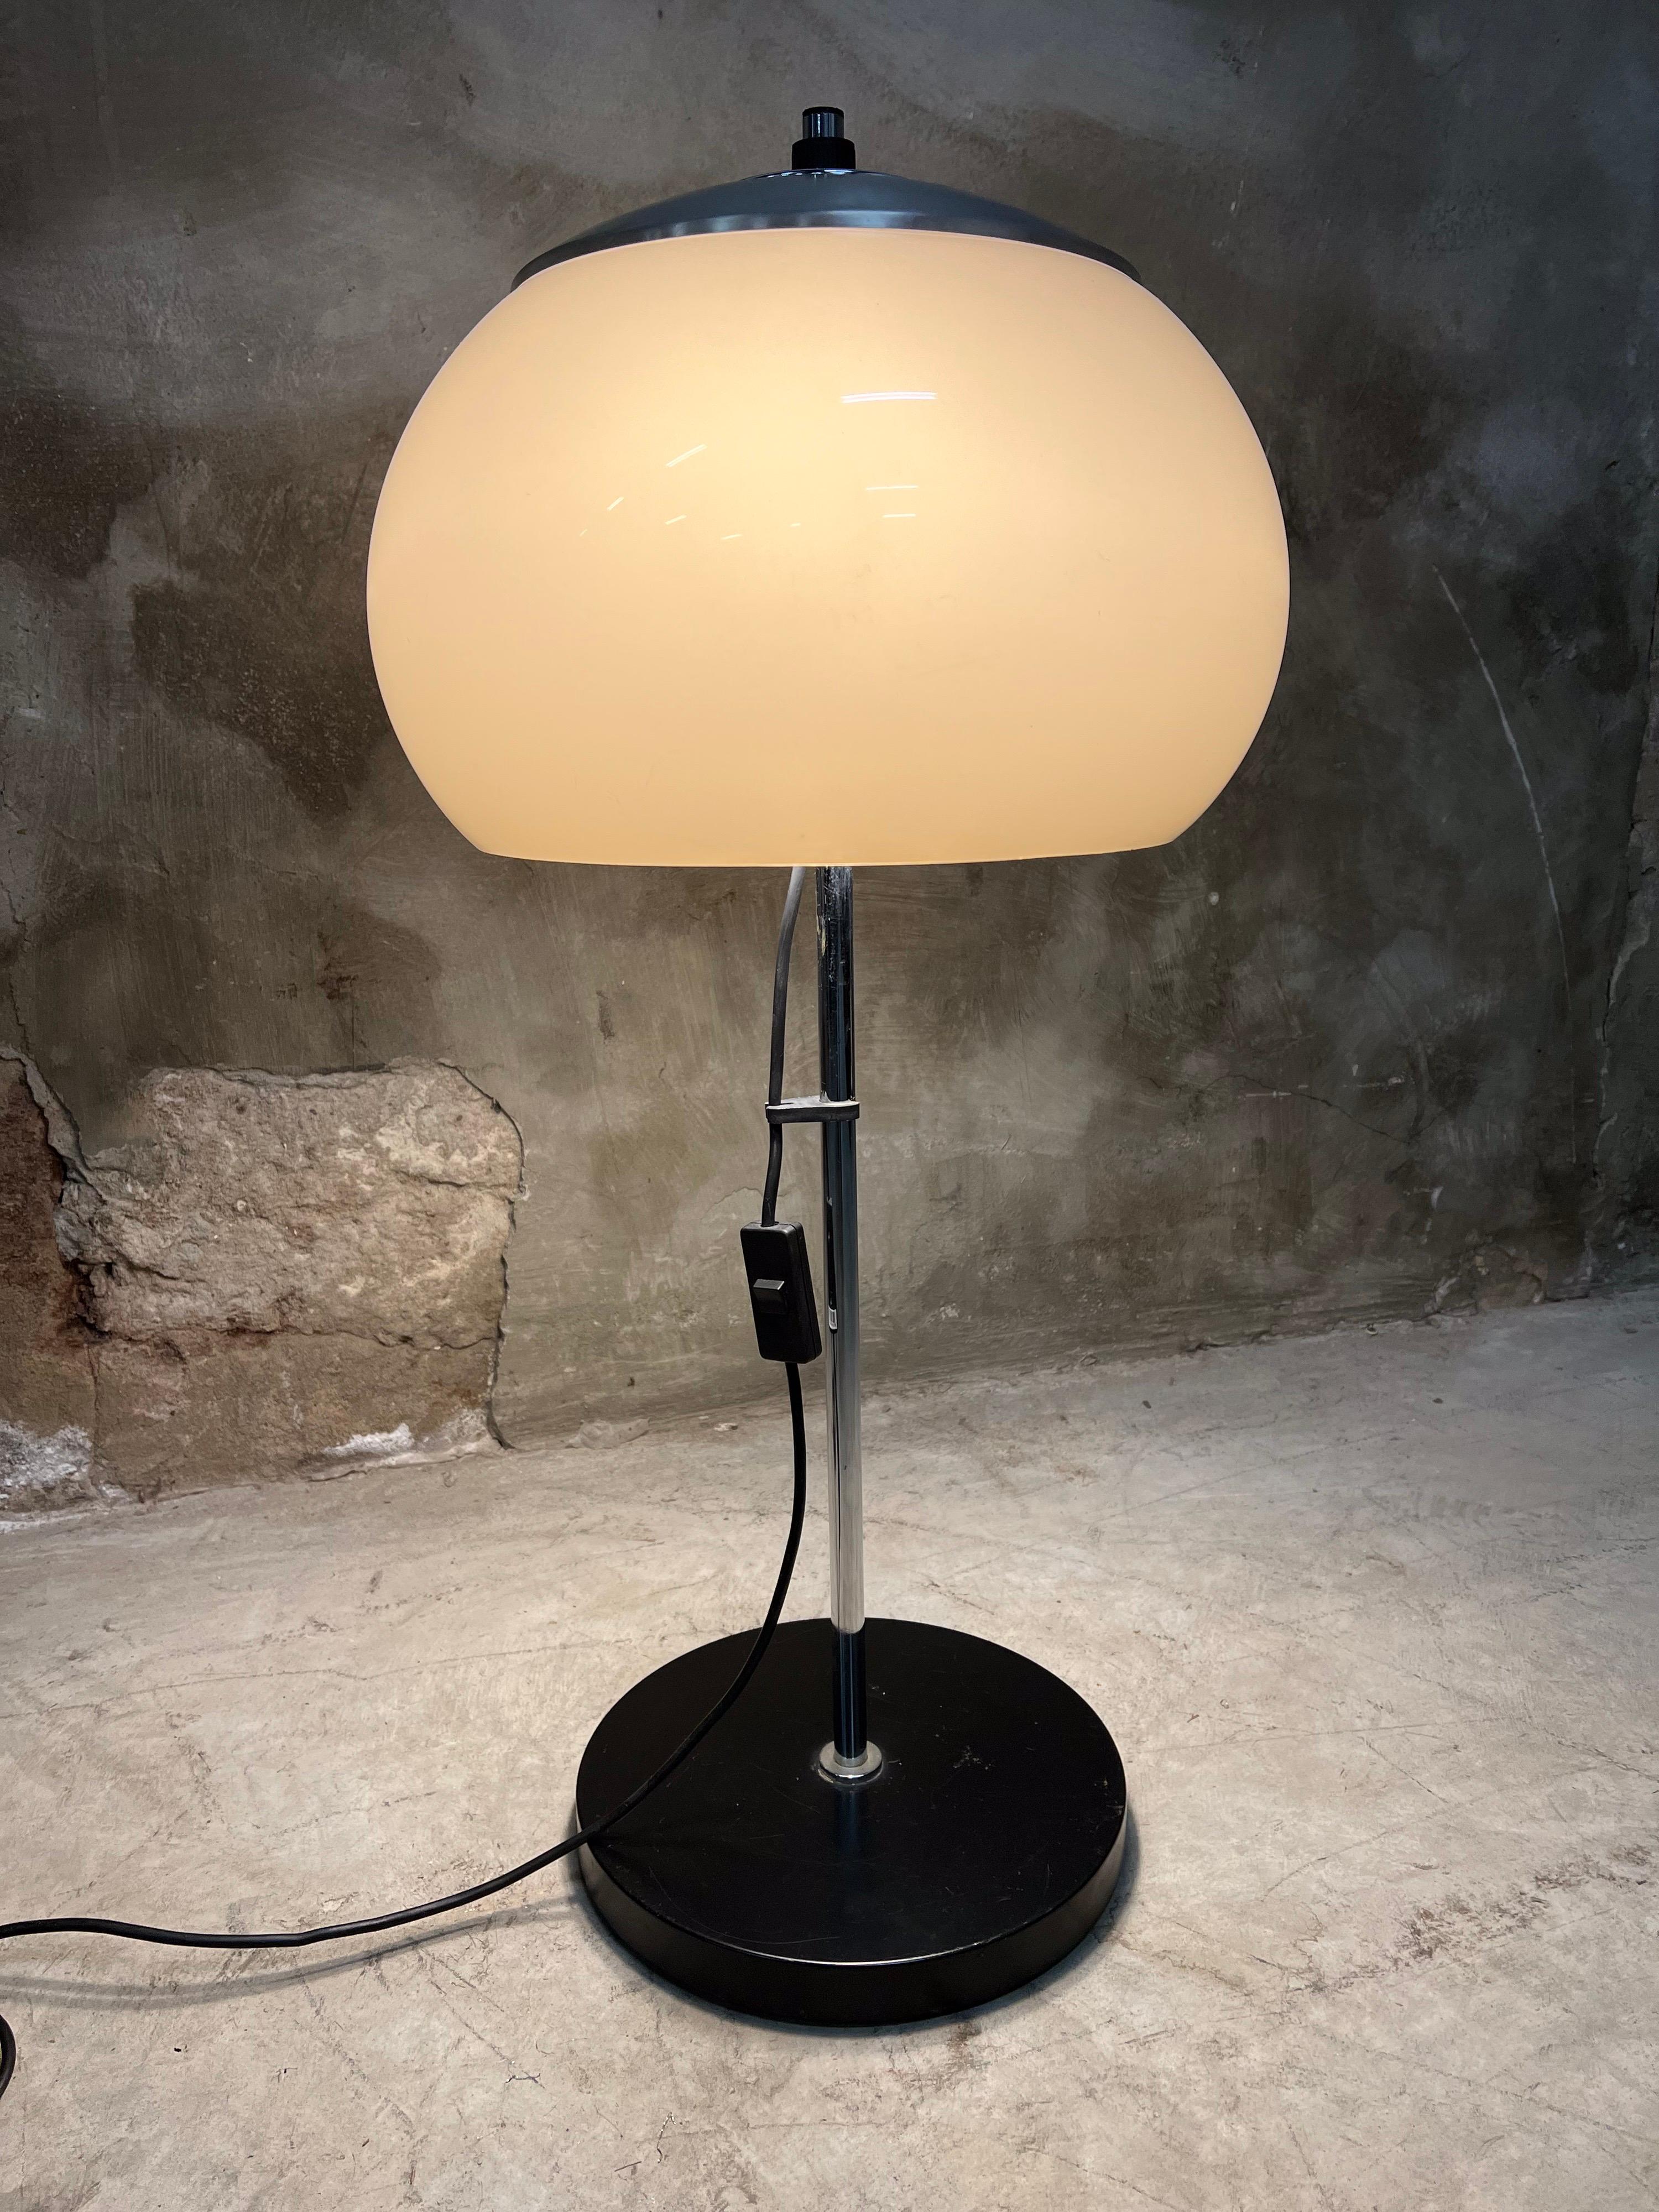 Space Age Mid-20th Century Vintage Dijkstra Mushroom Table Lamp